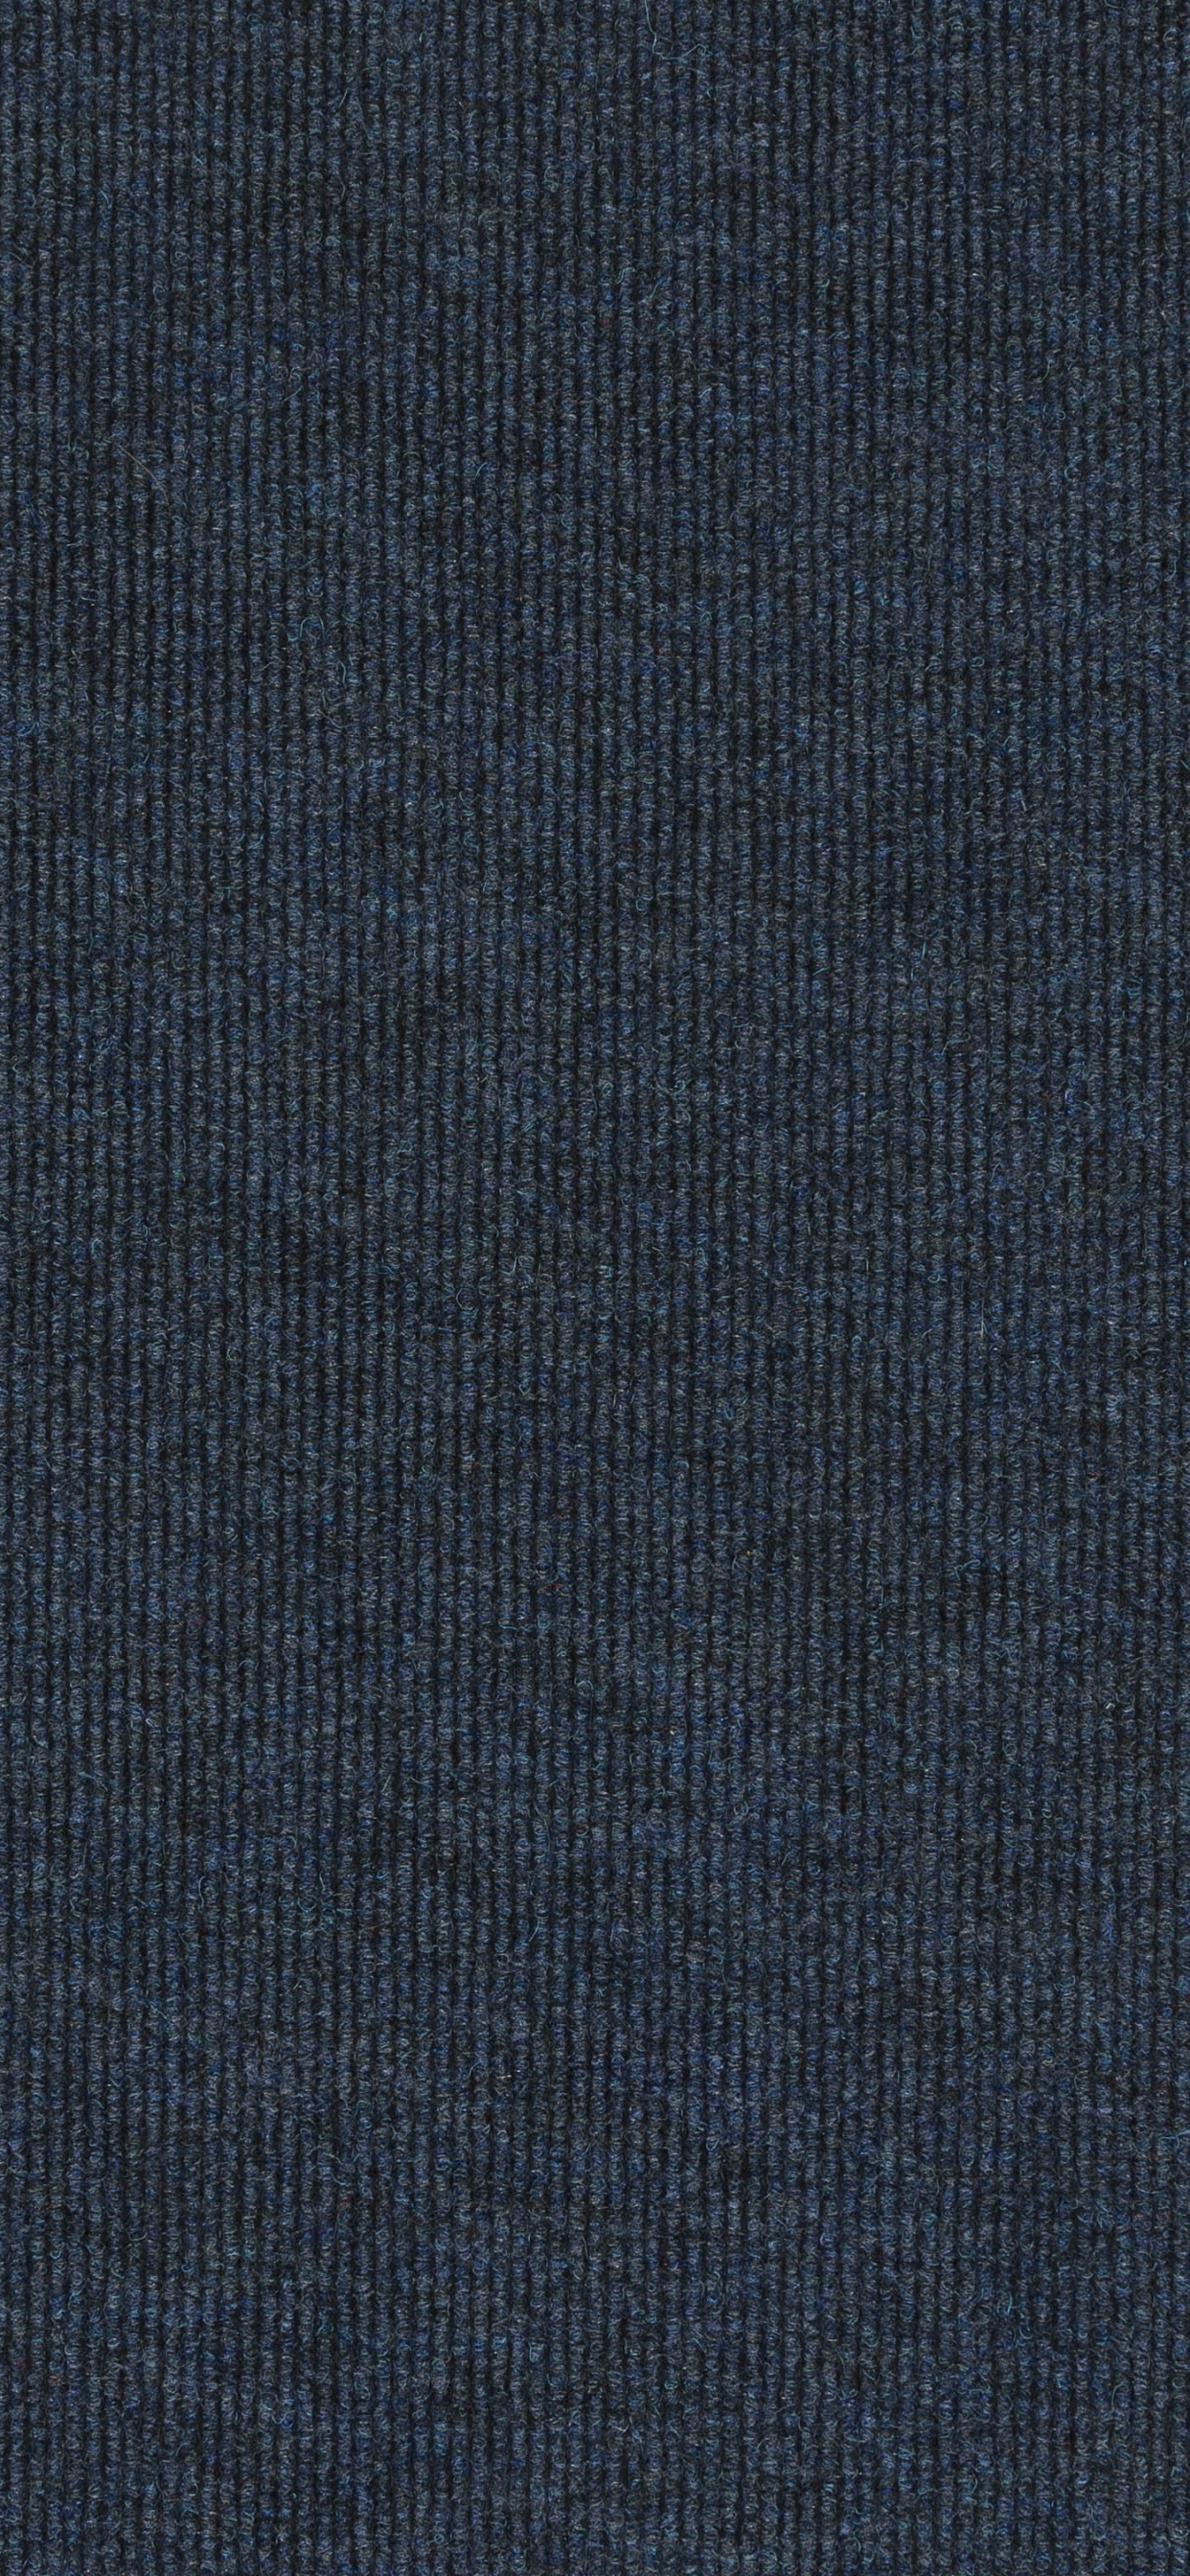 Textil Azul Con Fondo Negro. Wallpaper in 1242x2688 Resolution